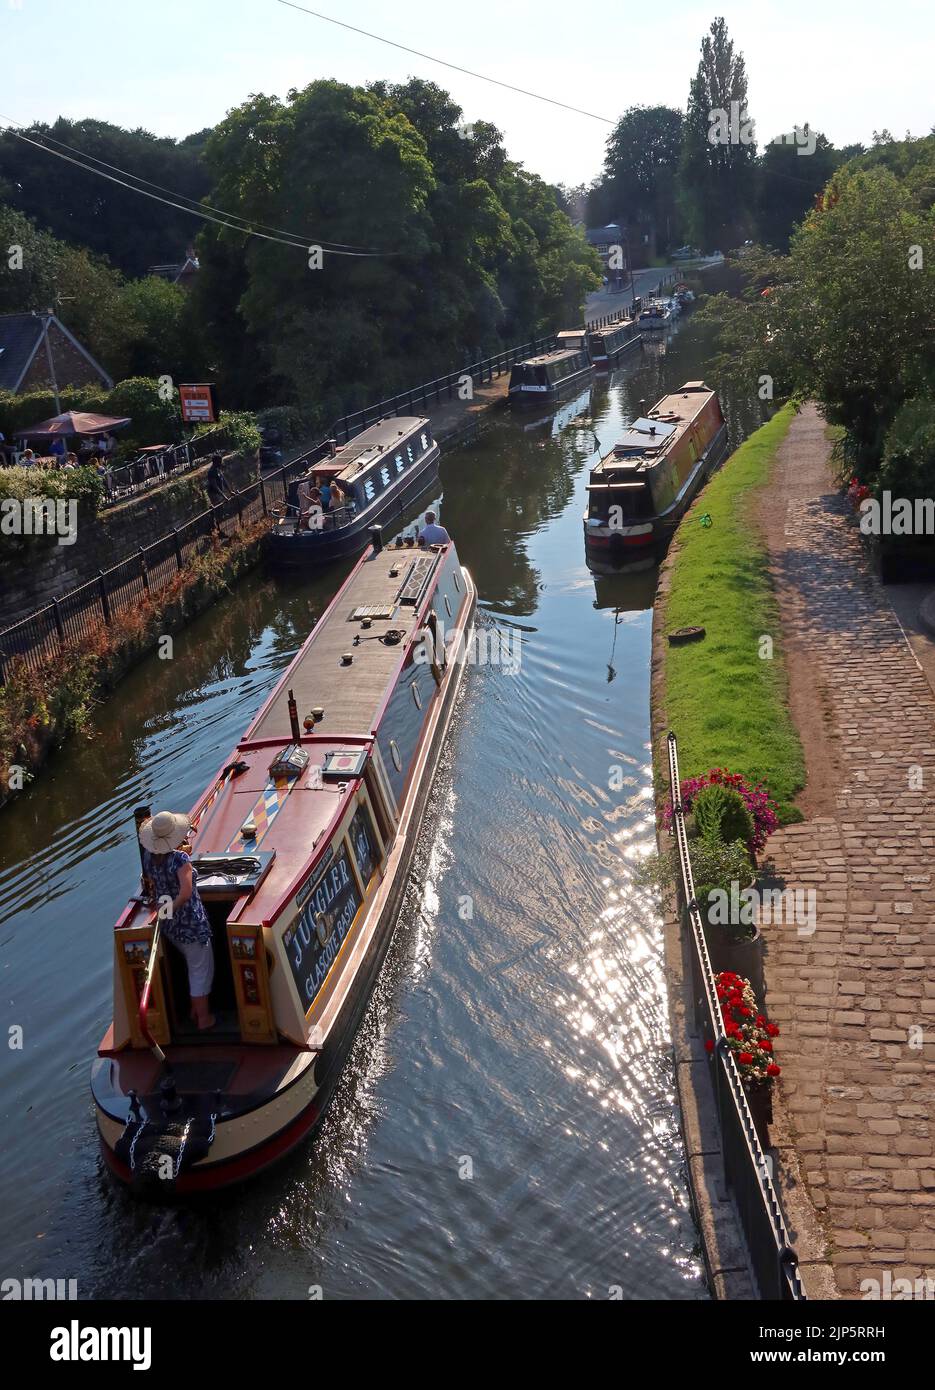 Il Barge Juggler dal bacino di Glascote, passa attraverso il villaggio di Lymm sul canale di Bridgewater, Warrington, Cheshire, Inghilterra, Regno Unito, WA13 0HR Foto Stock